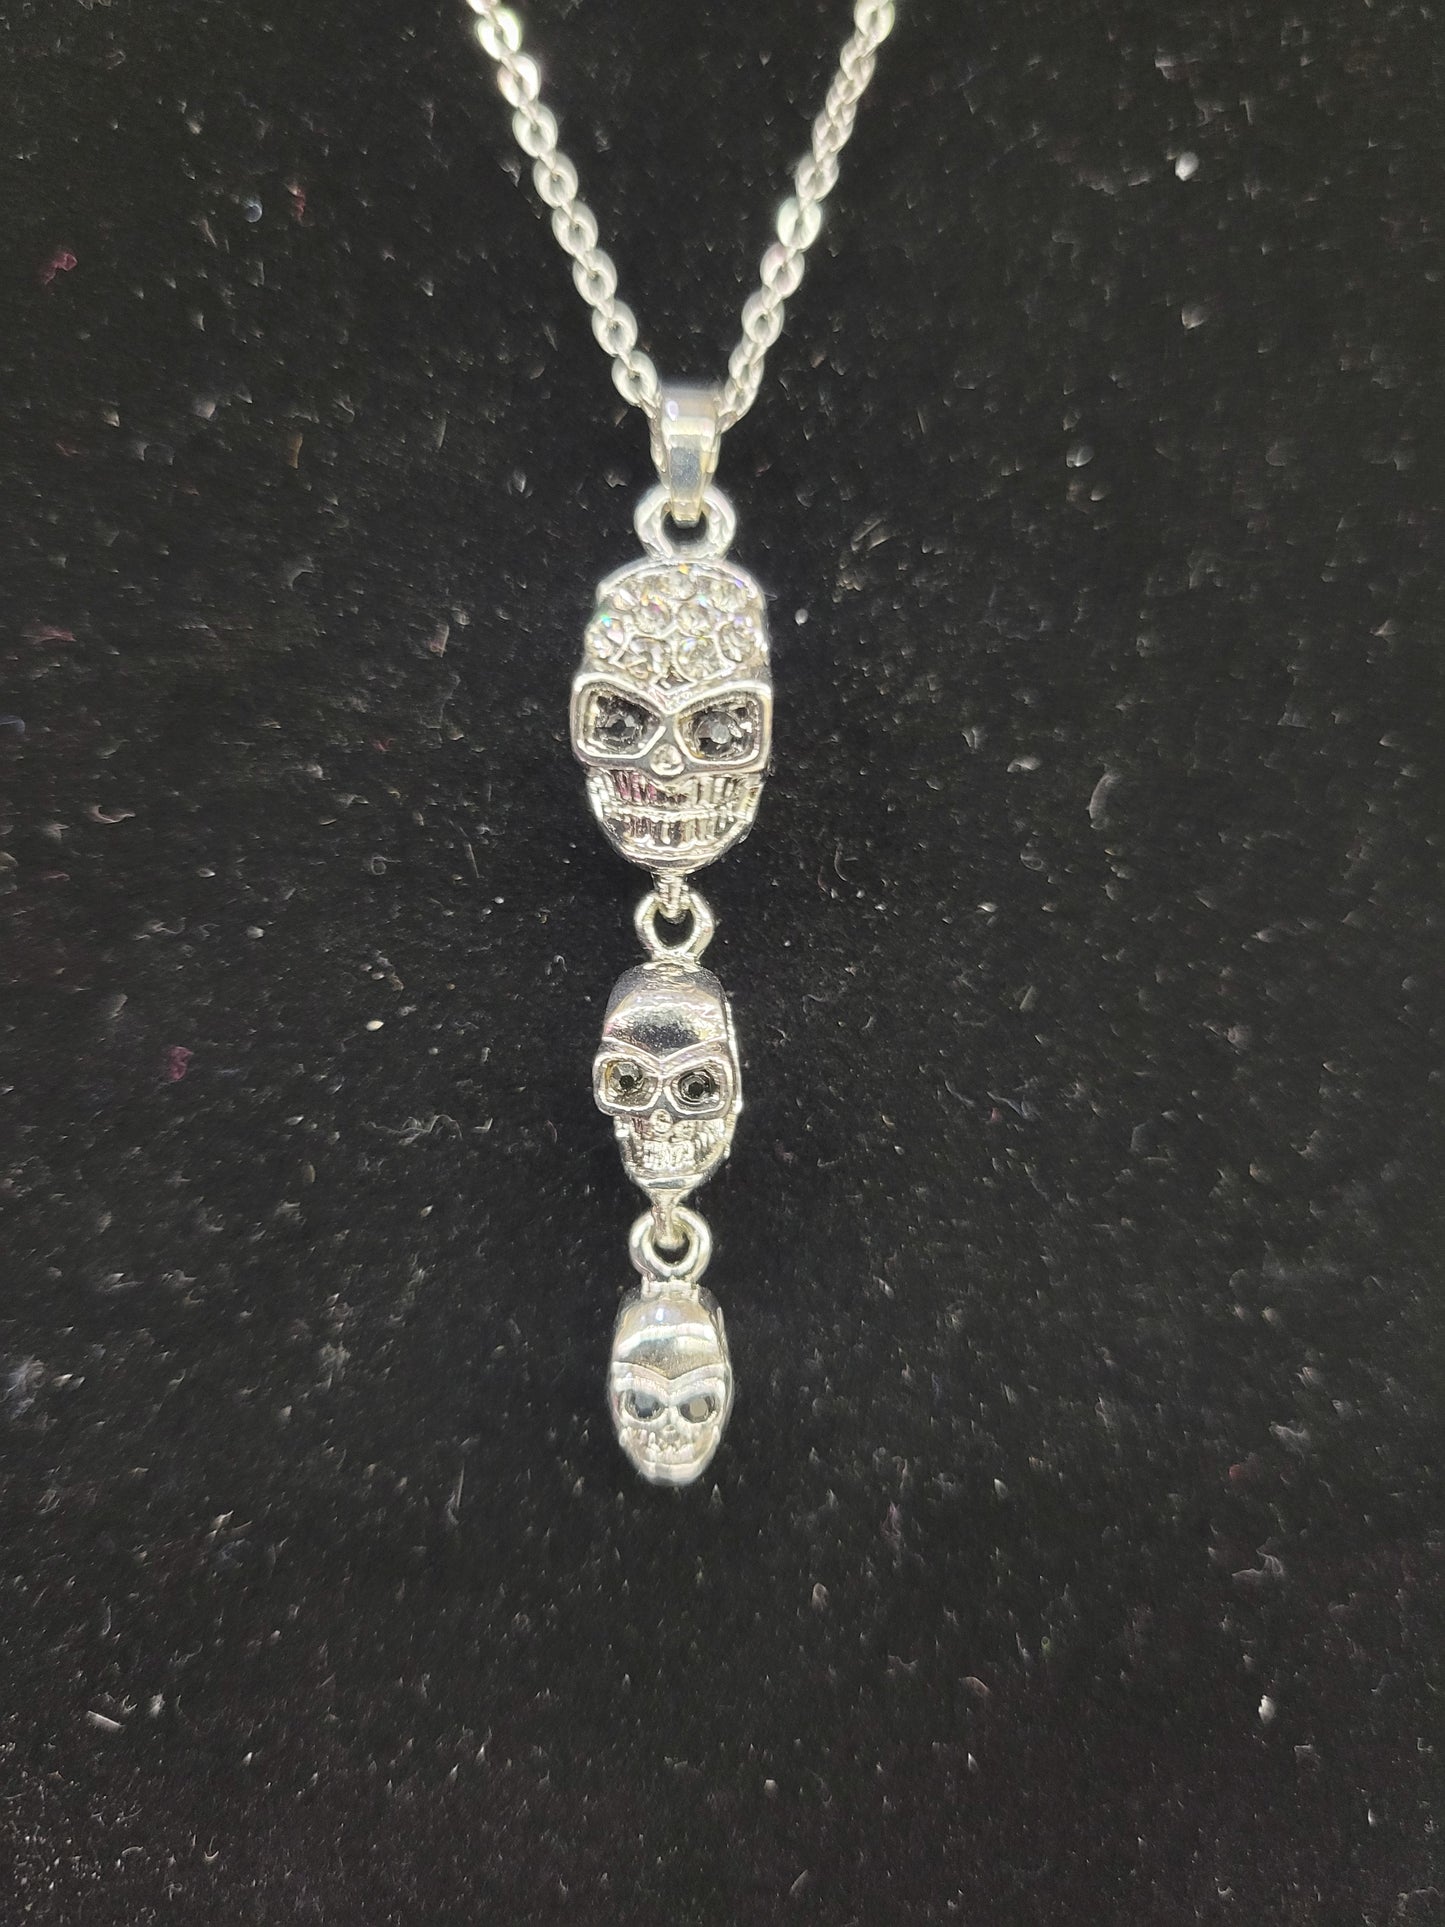 3 Skull Necklace